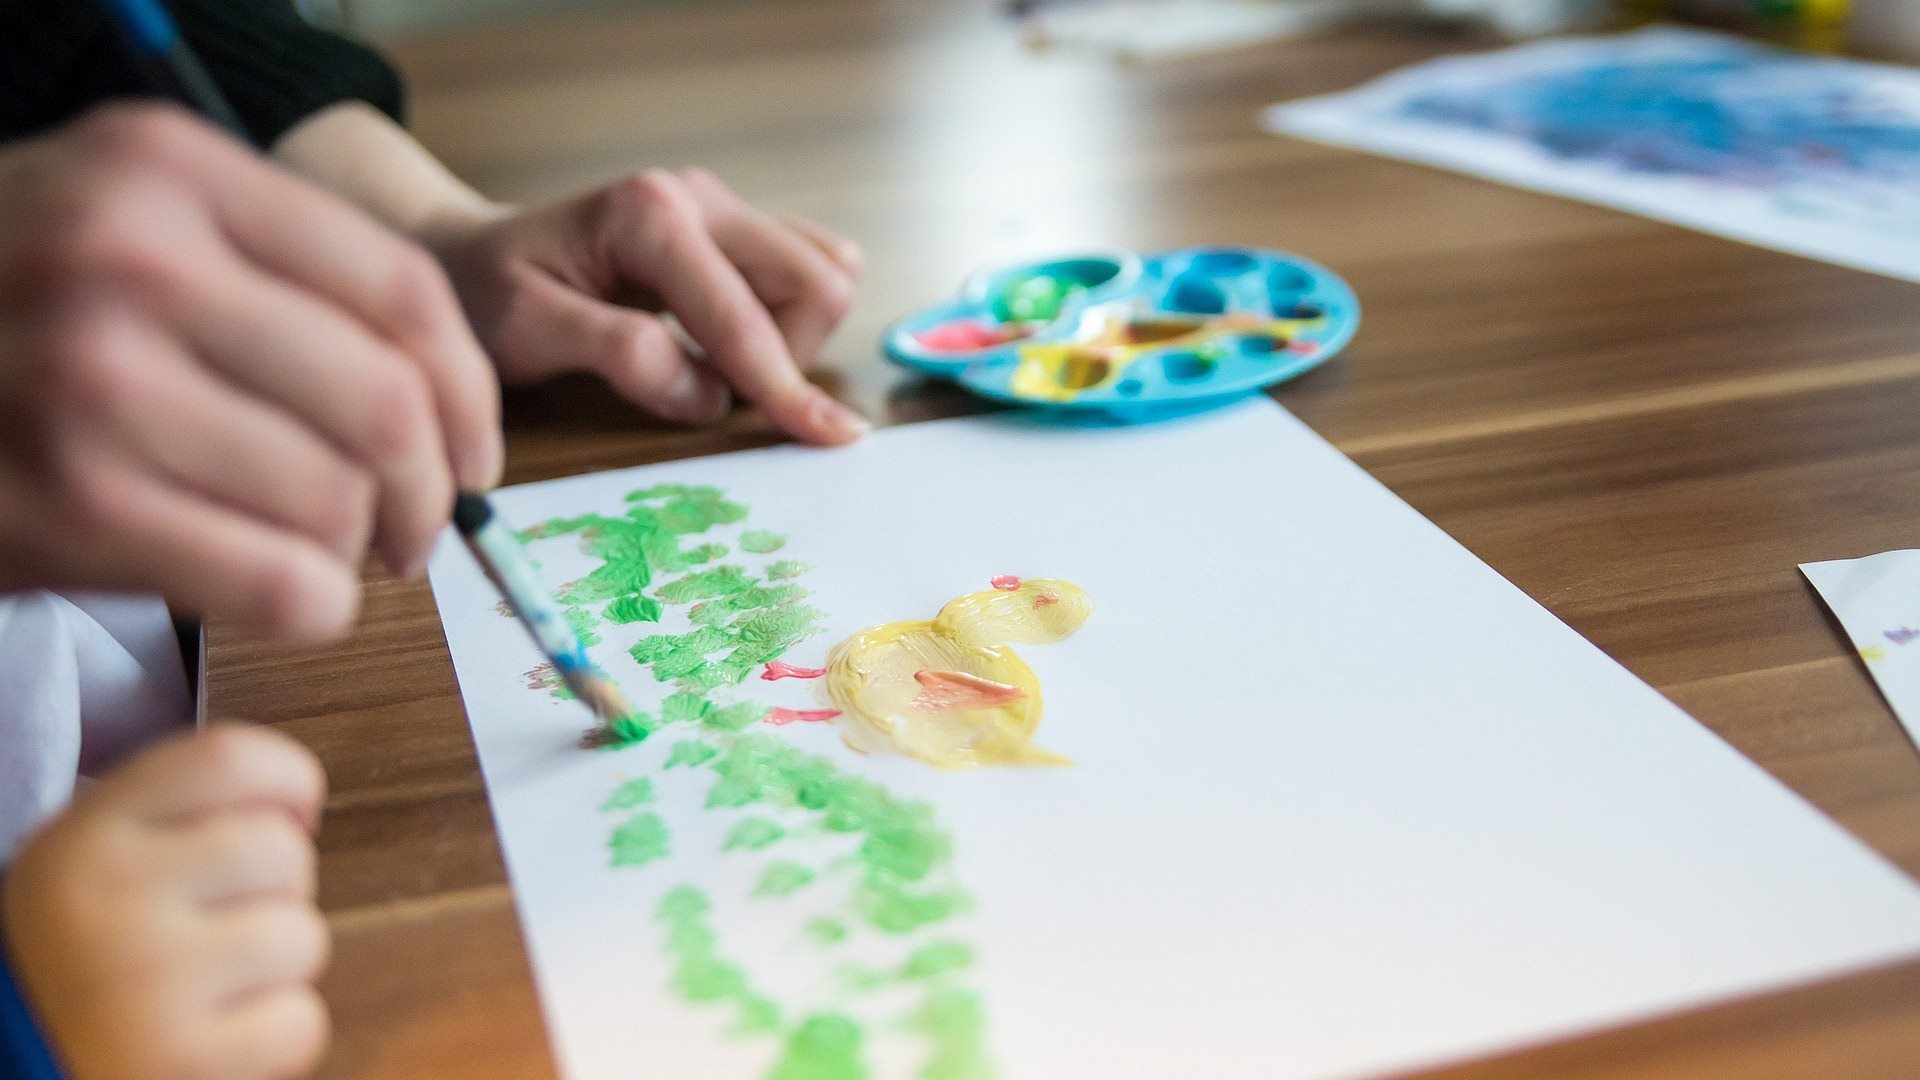 Kinderhand und die Hand einer erwachsenen Frau malne an einem Bild mit Rasen und Kücken.